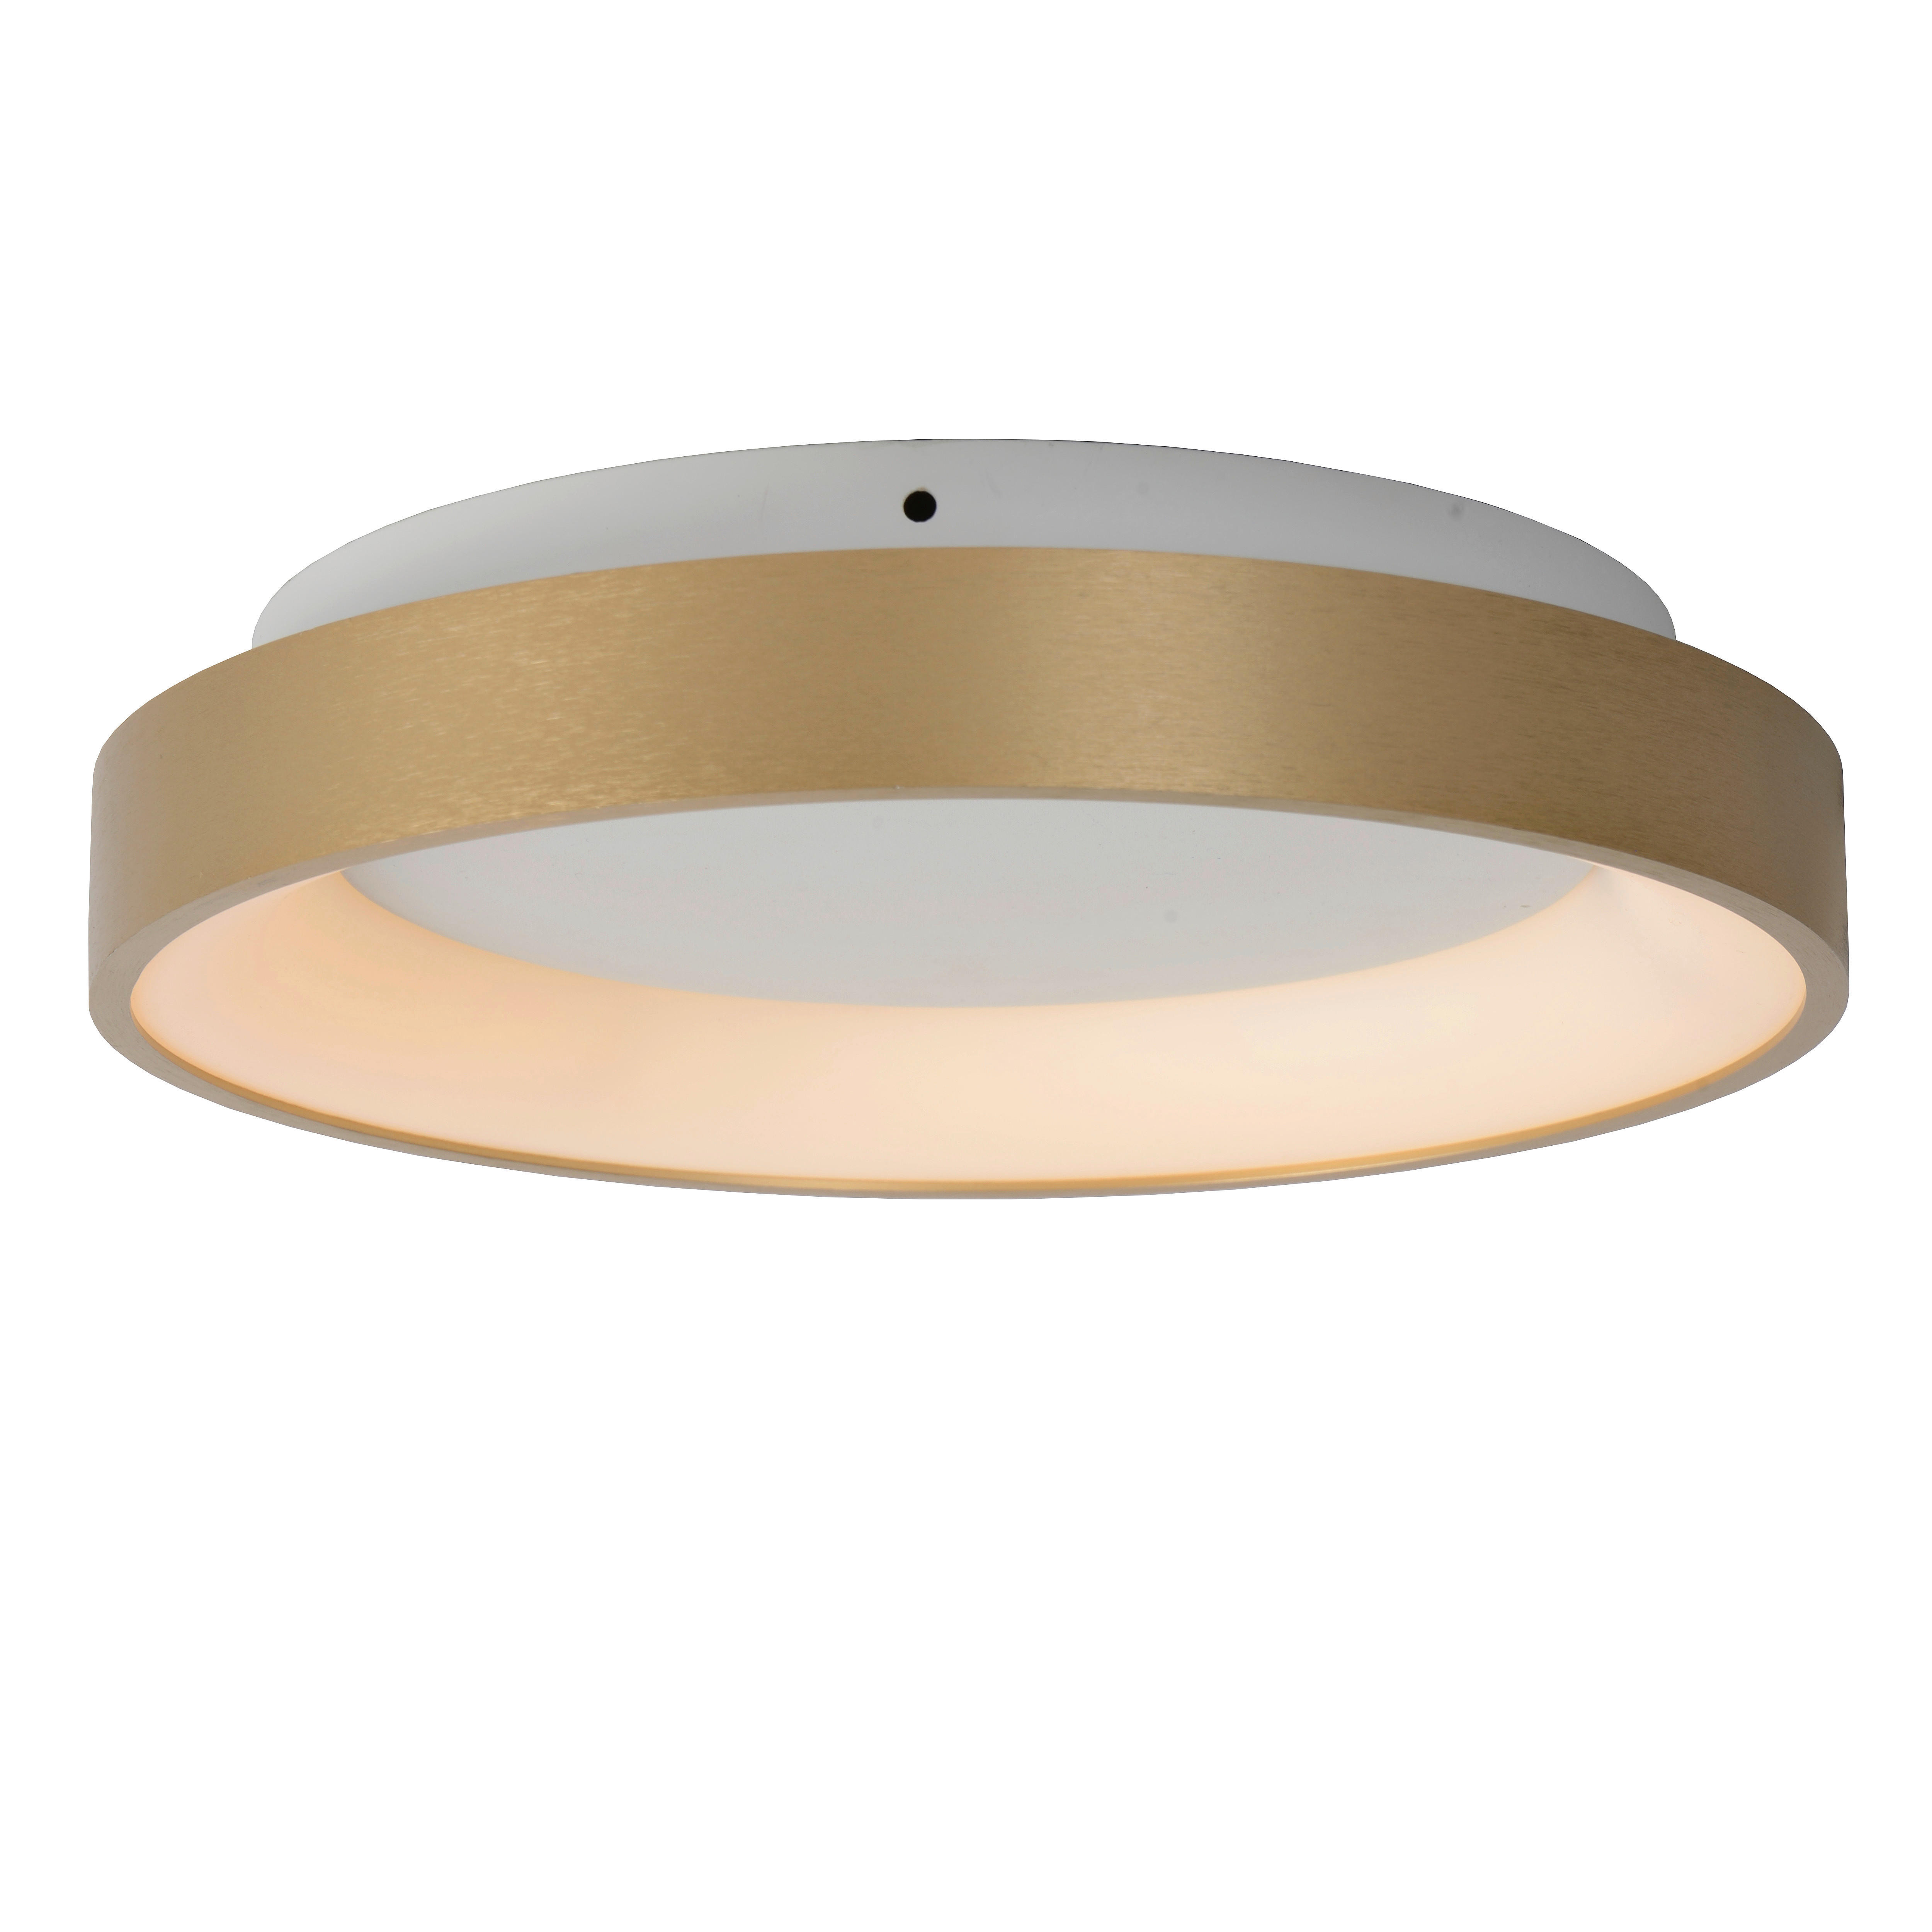 LED-DECKENLEUCHTE  28/6 cm    - Messingfarben/Opal, Design, Kunststoff/Metall (28/6cm) - Lucide